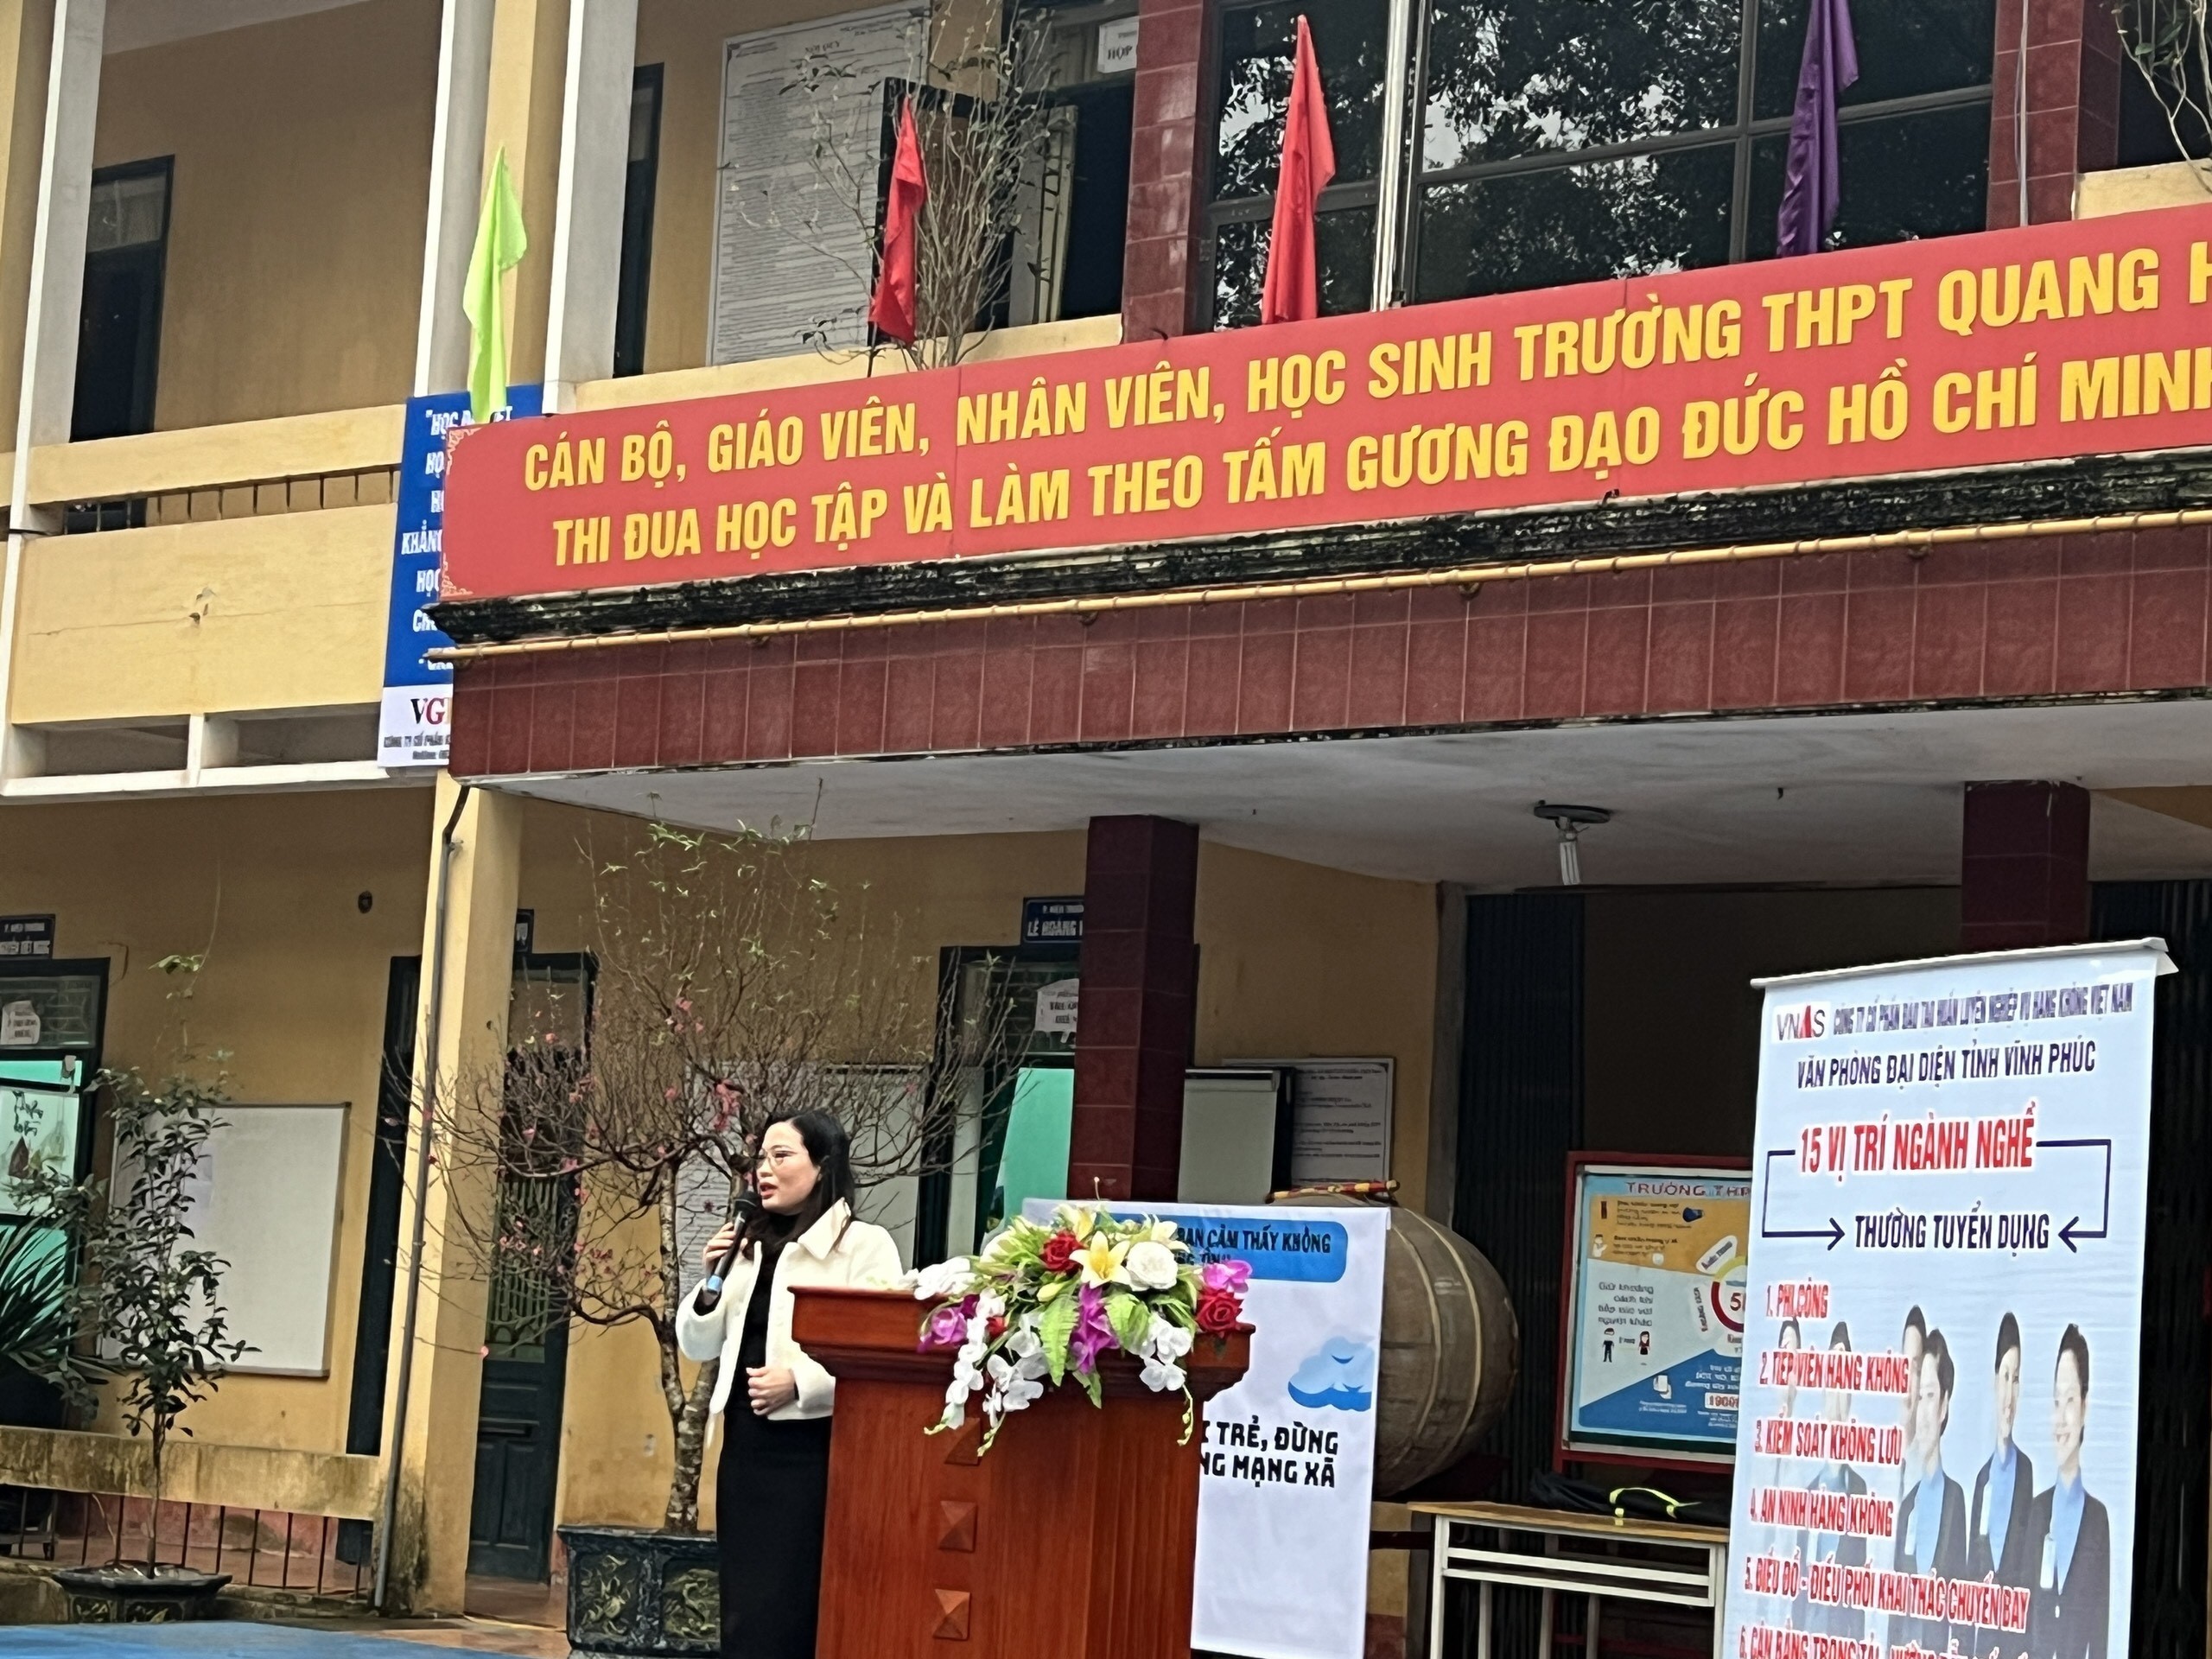 TTT Huấn luyện bay-Định hướng nghề nghiệp cho học sinh trường THPT Quang Hà, Vĩnh Phúc